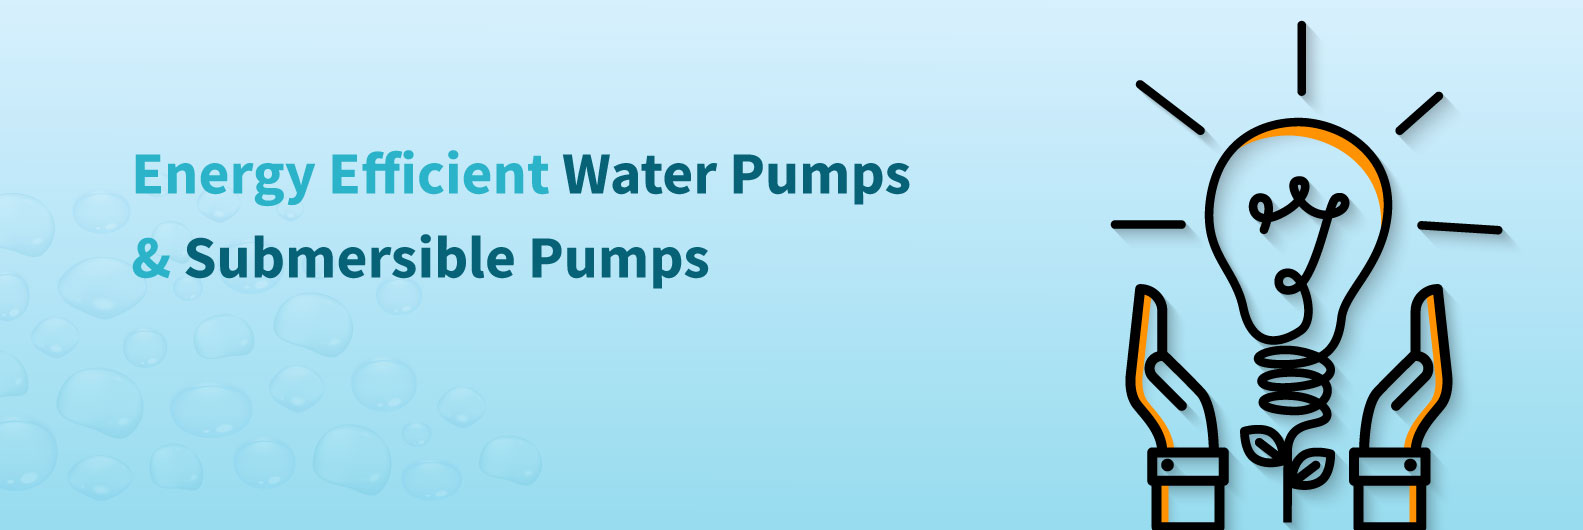 Energy Efficient Water Pumps & Submersible Pumps